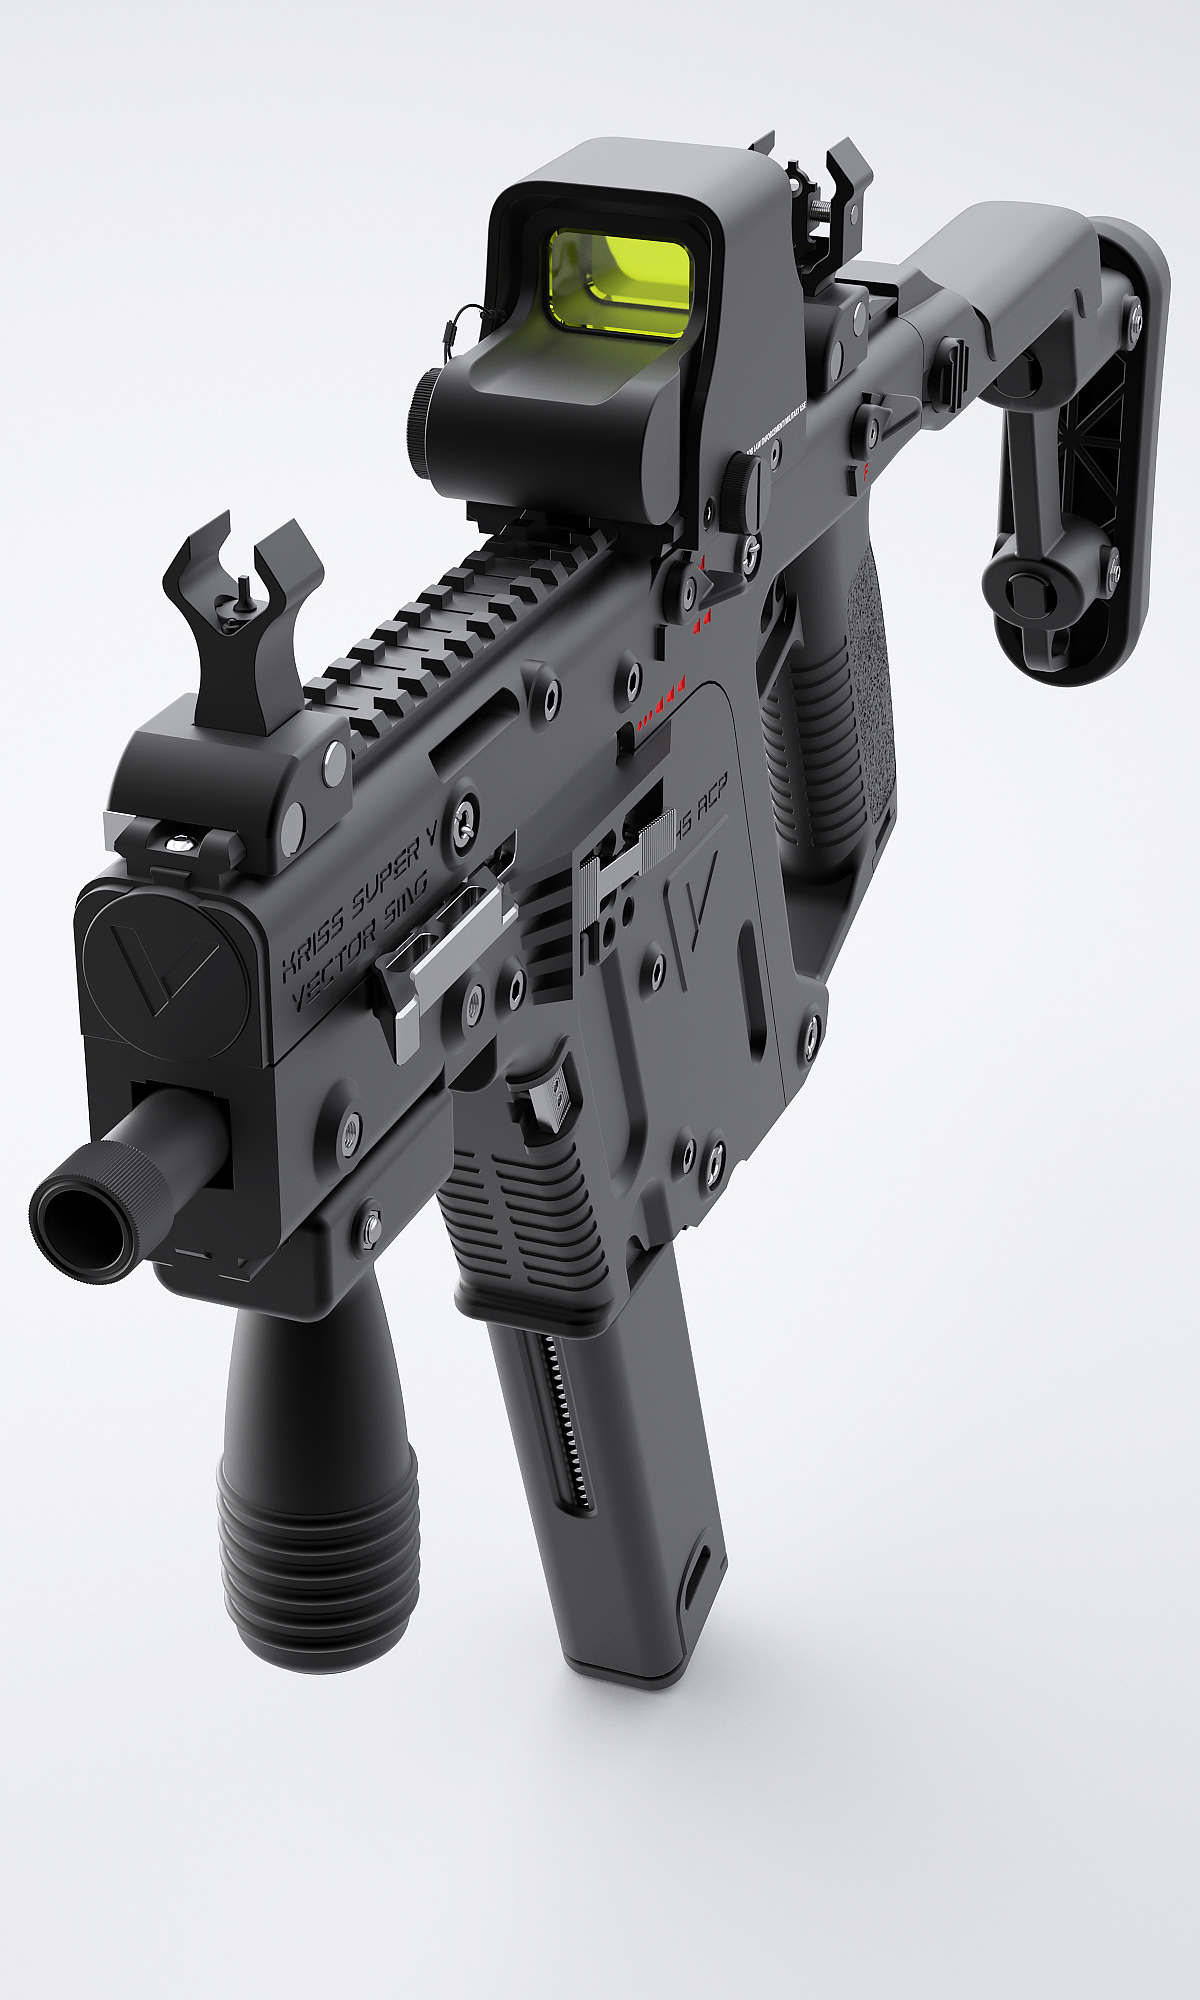 Kriss Vector，枪支，游戏，模型，军事，枪械模型，